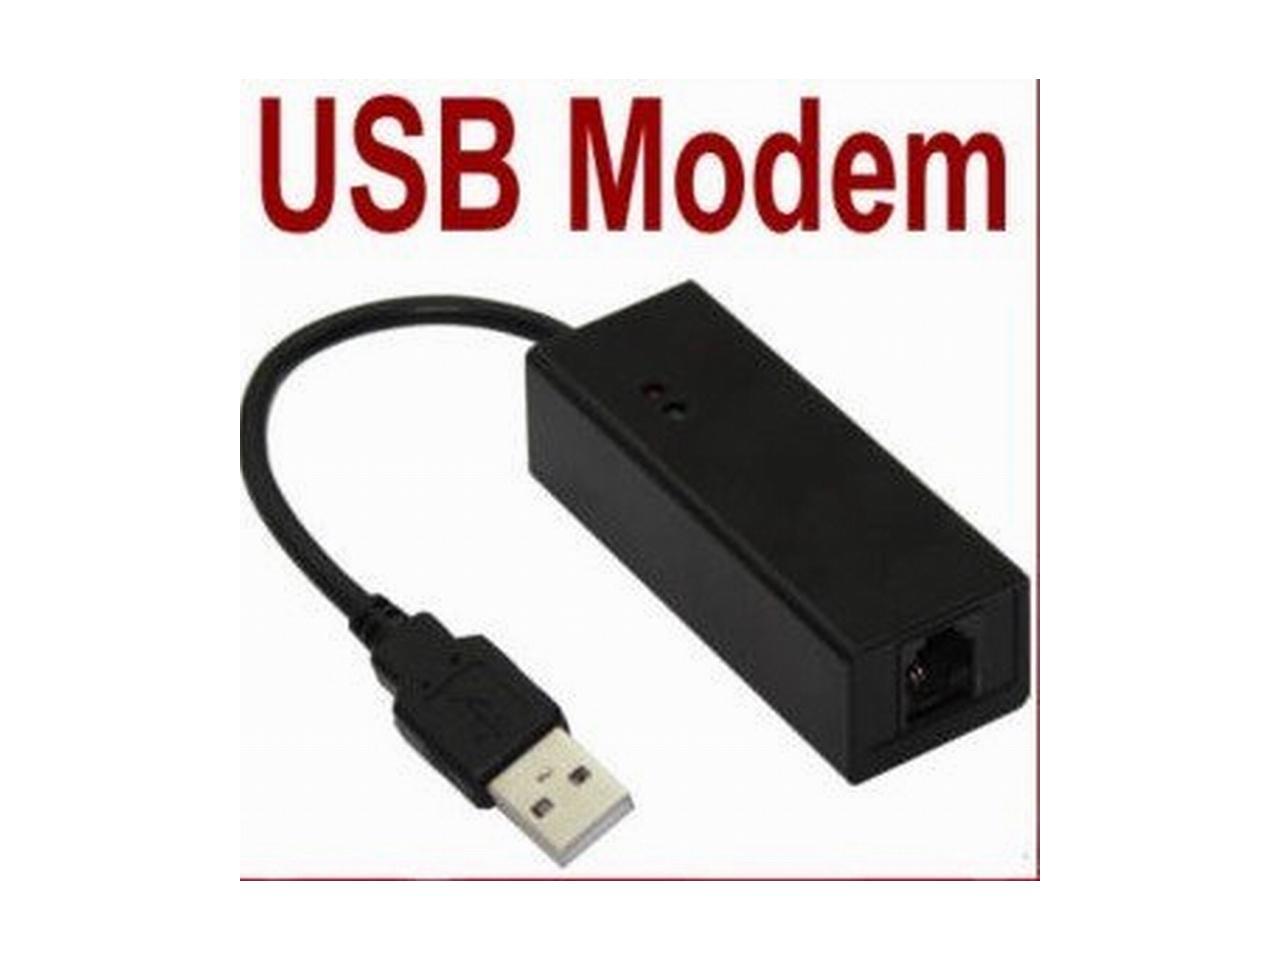 conexant adsl usb modem driver download